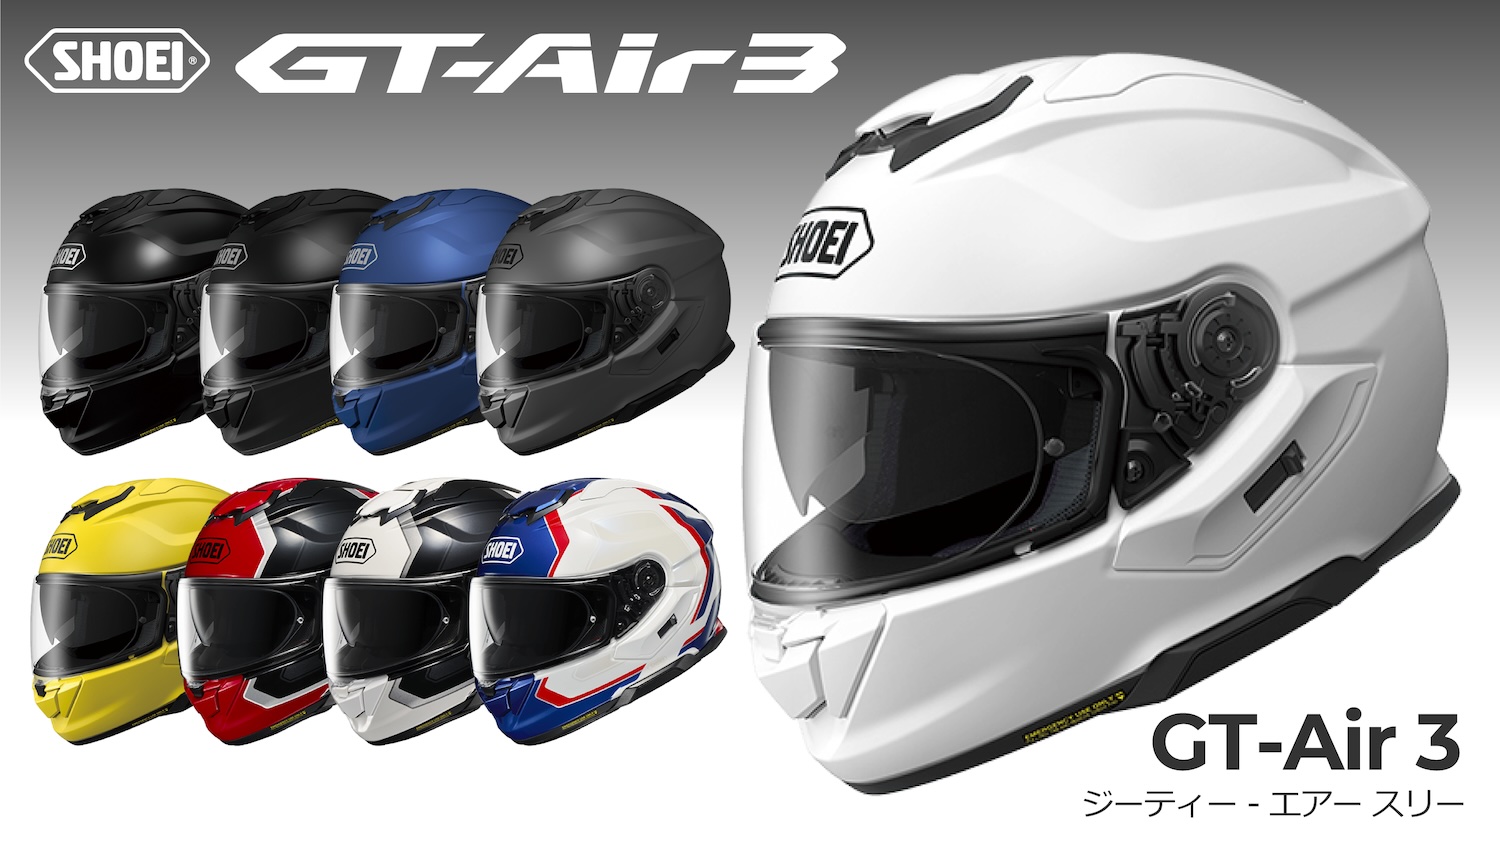 SHOEI NEWツーリングヘルメット｢GT-Air3｣発売 | 2りんかんNEWS